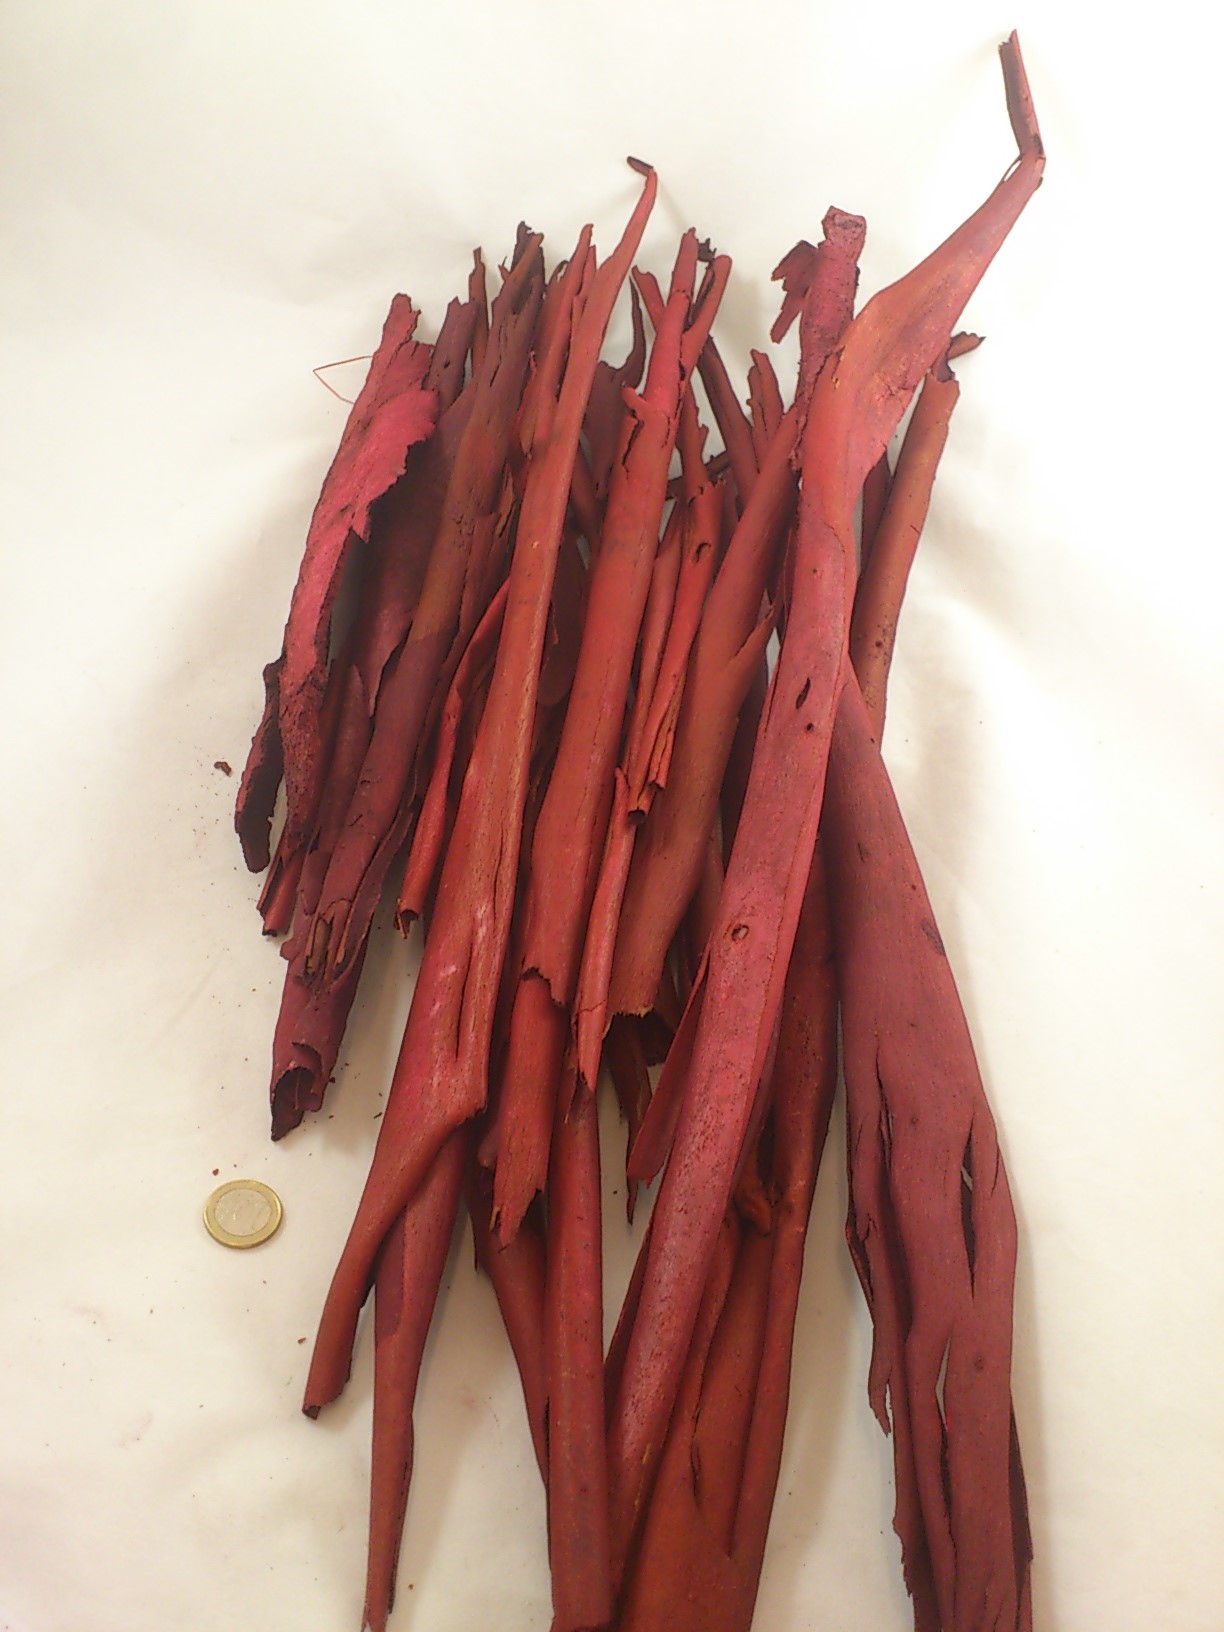 Eucalyptus bark red 500 gr.